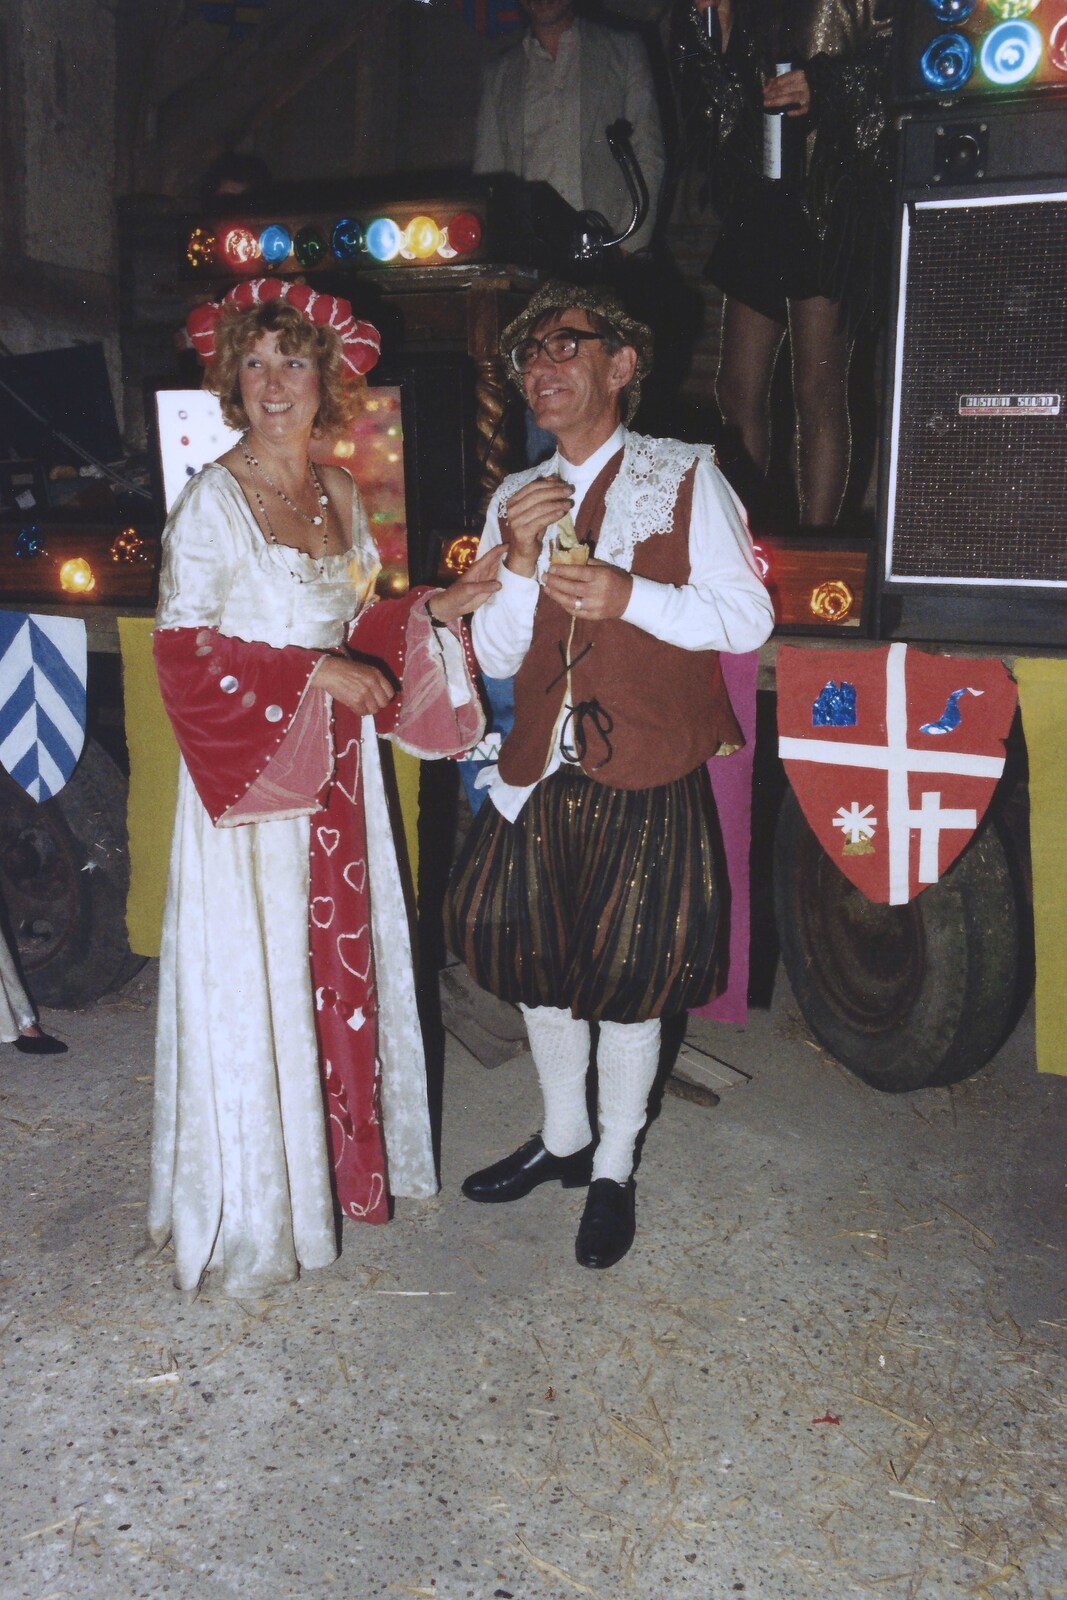 Elteb and Derek from A Mediaeval Birthday Party, Starston, Norfolk - 27th July 1990